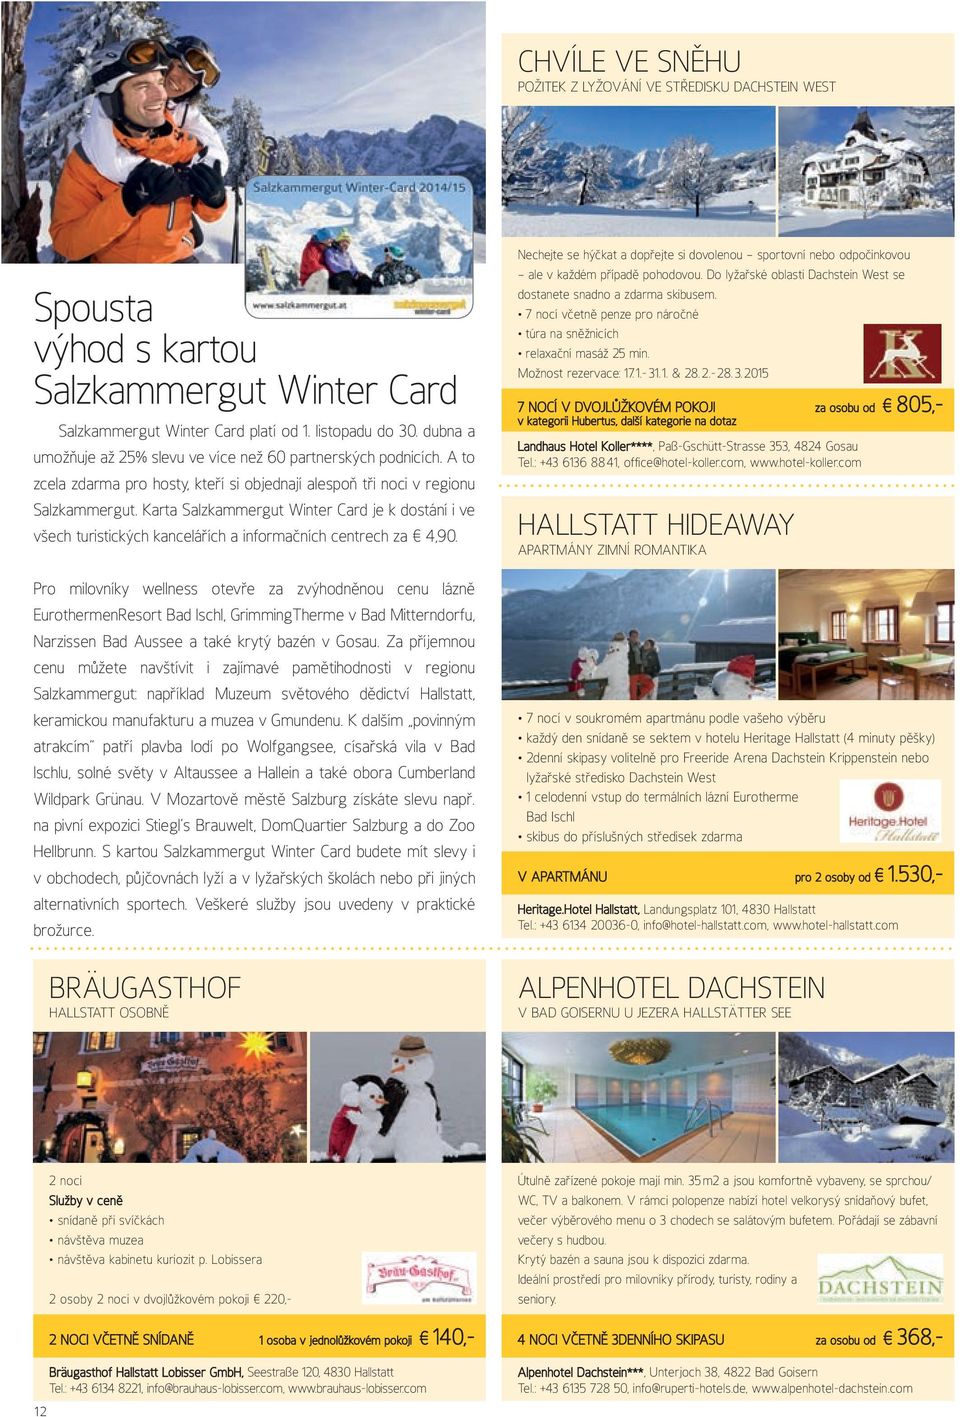 Karta Salzkammergut Winter Card je k dostání i ve všech turistických kancelářích a informačních centrech za 4,90.